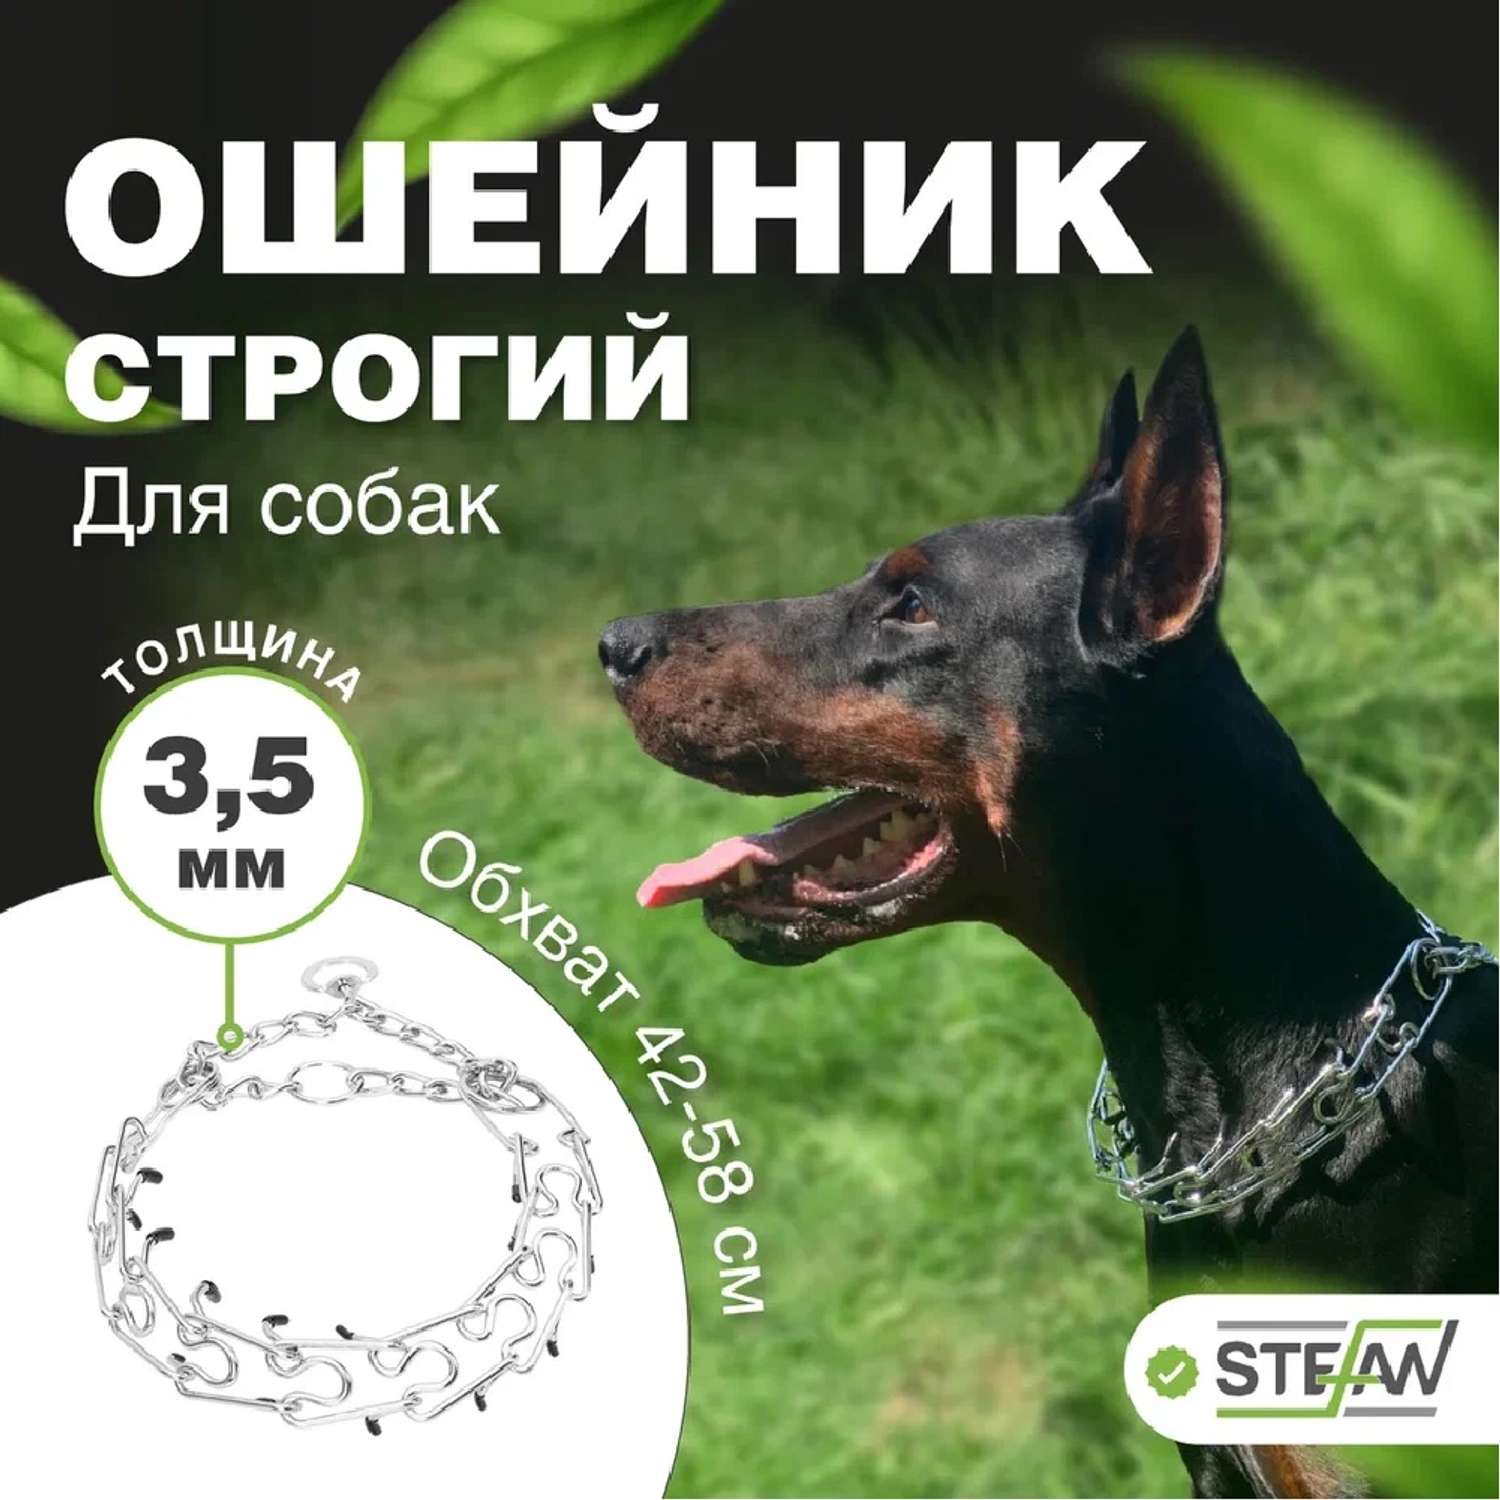 Ошейник для собак Stefan строгий XL 4.0X60 - фото 1